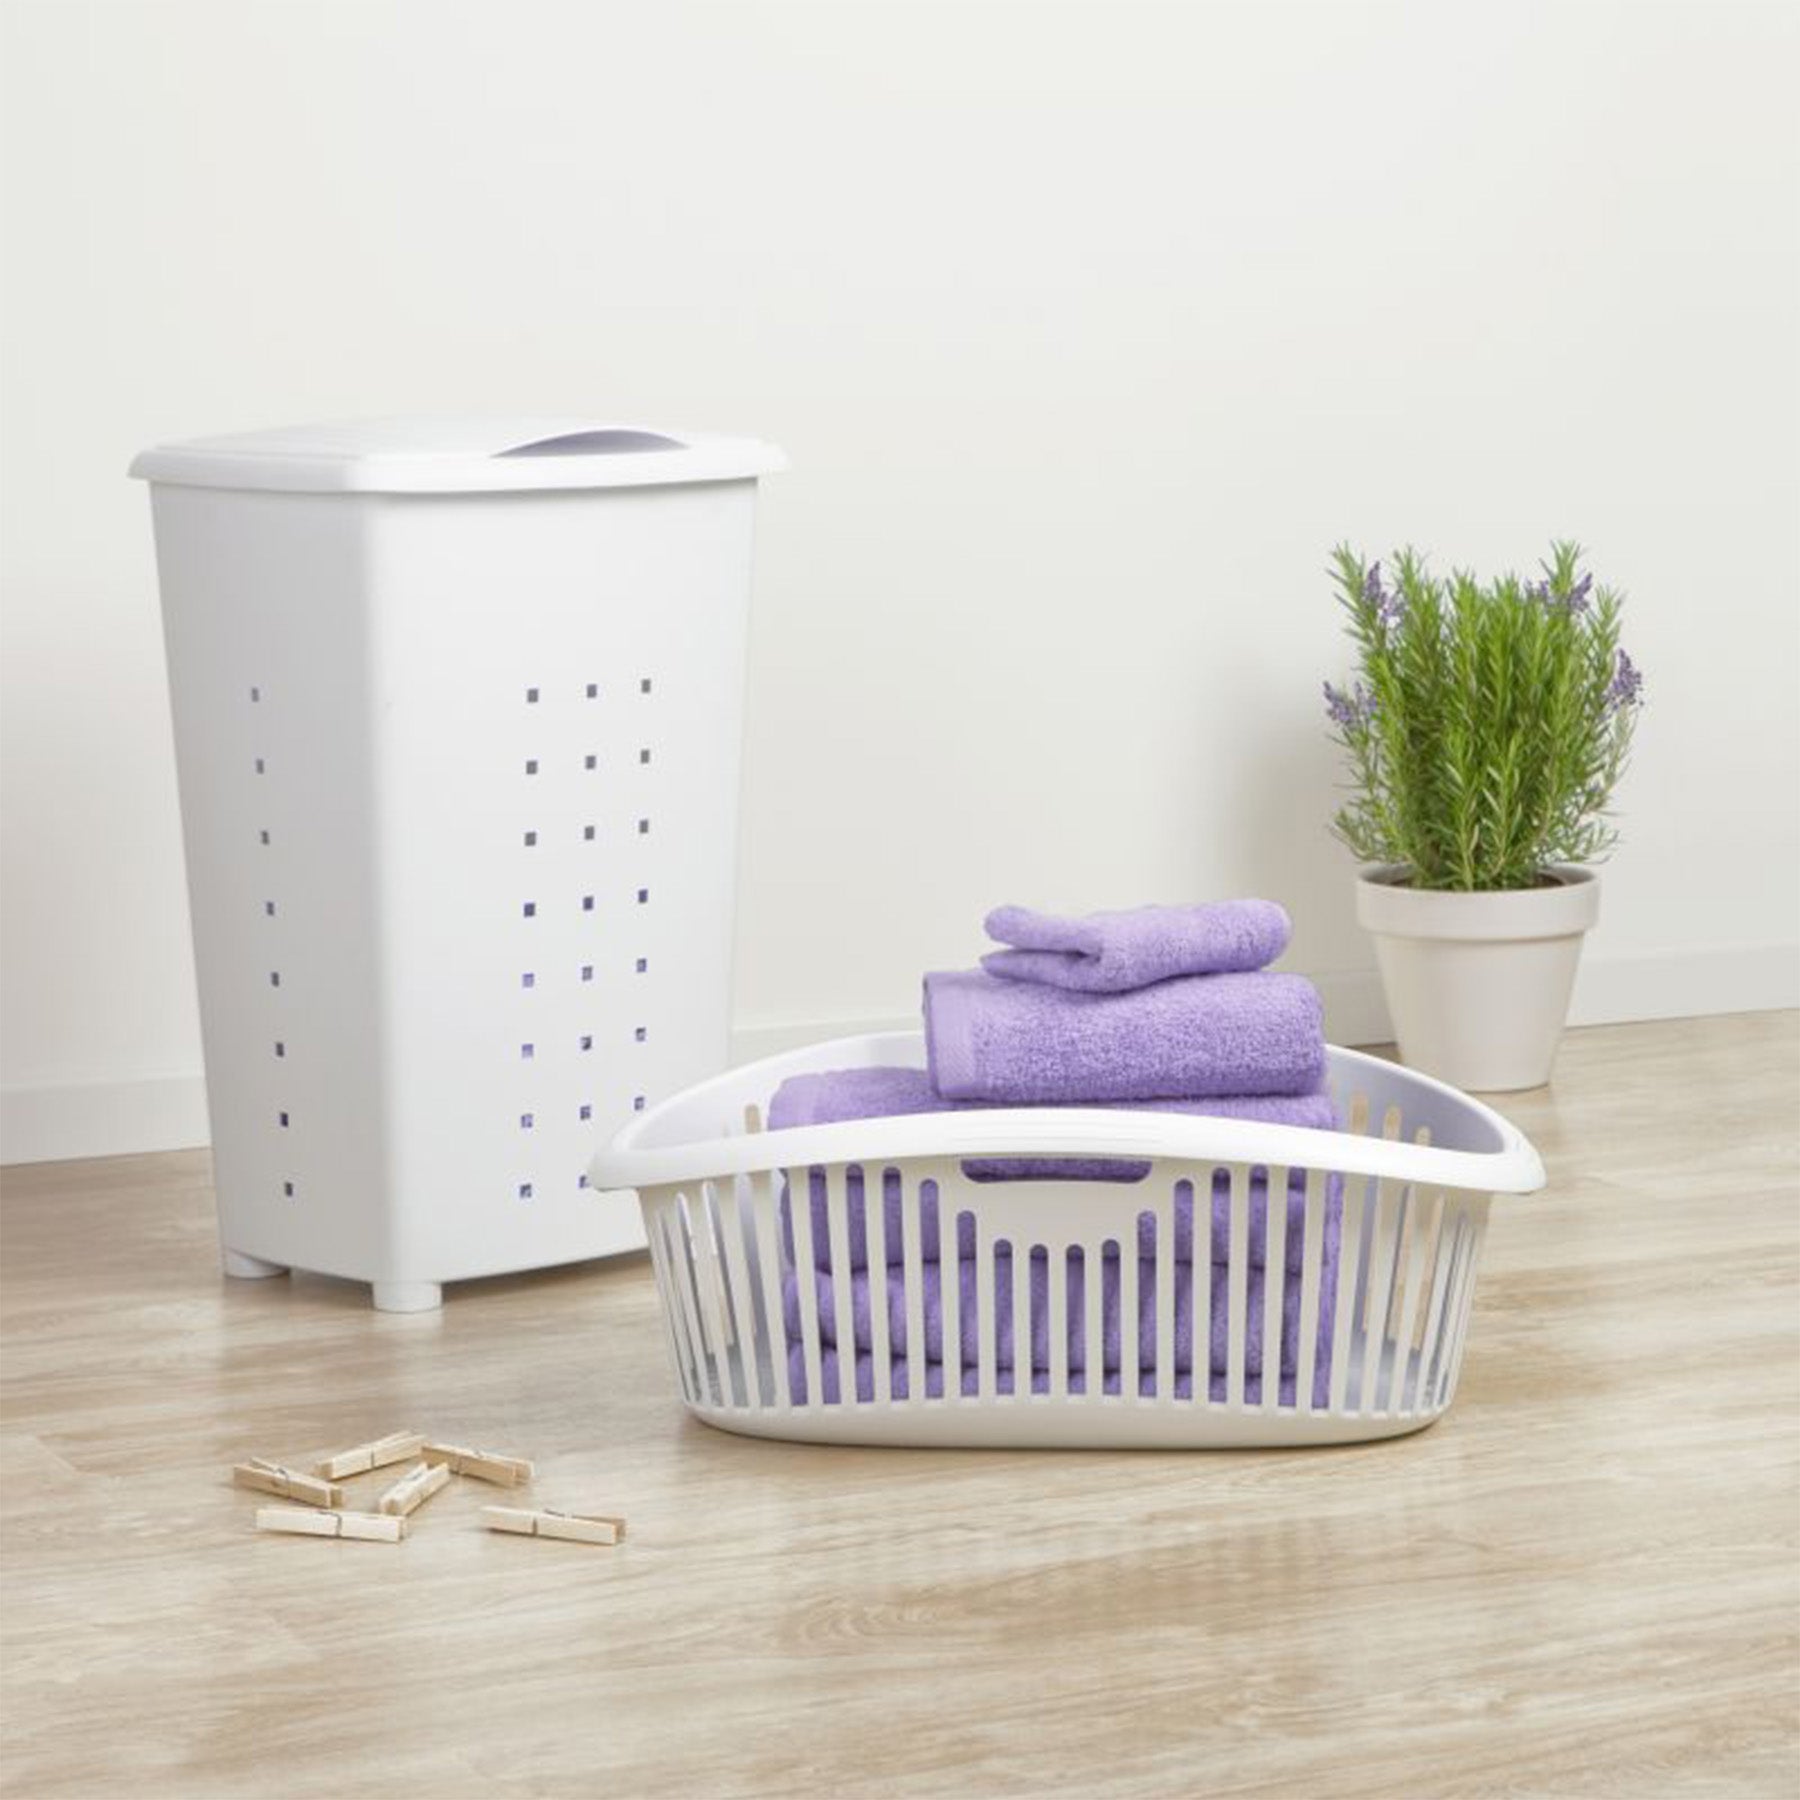 Laundry basket - White